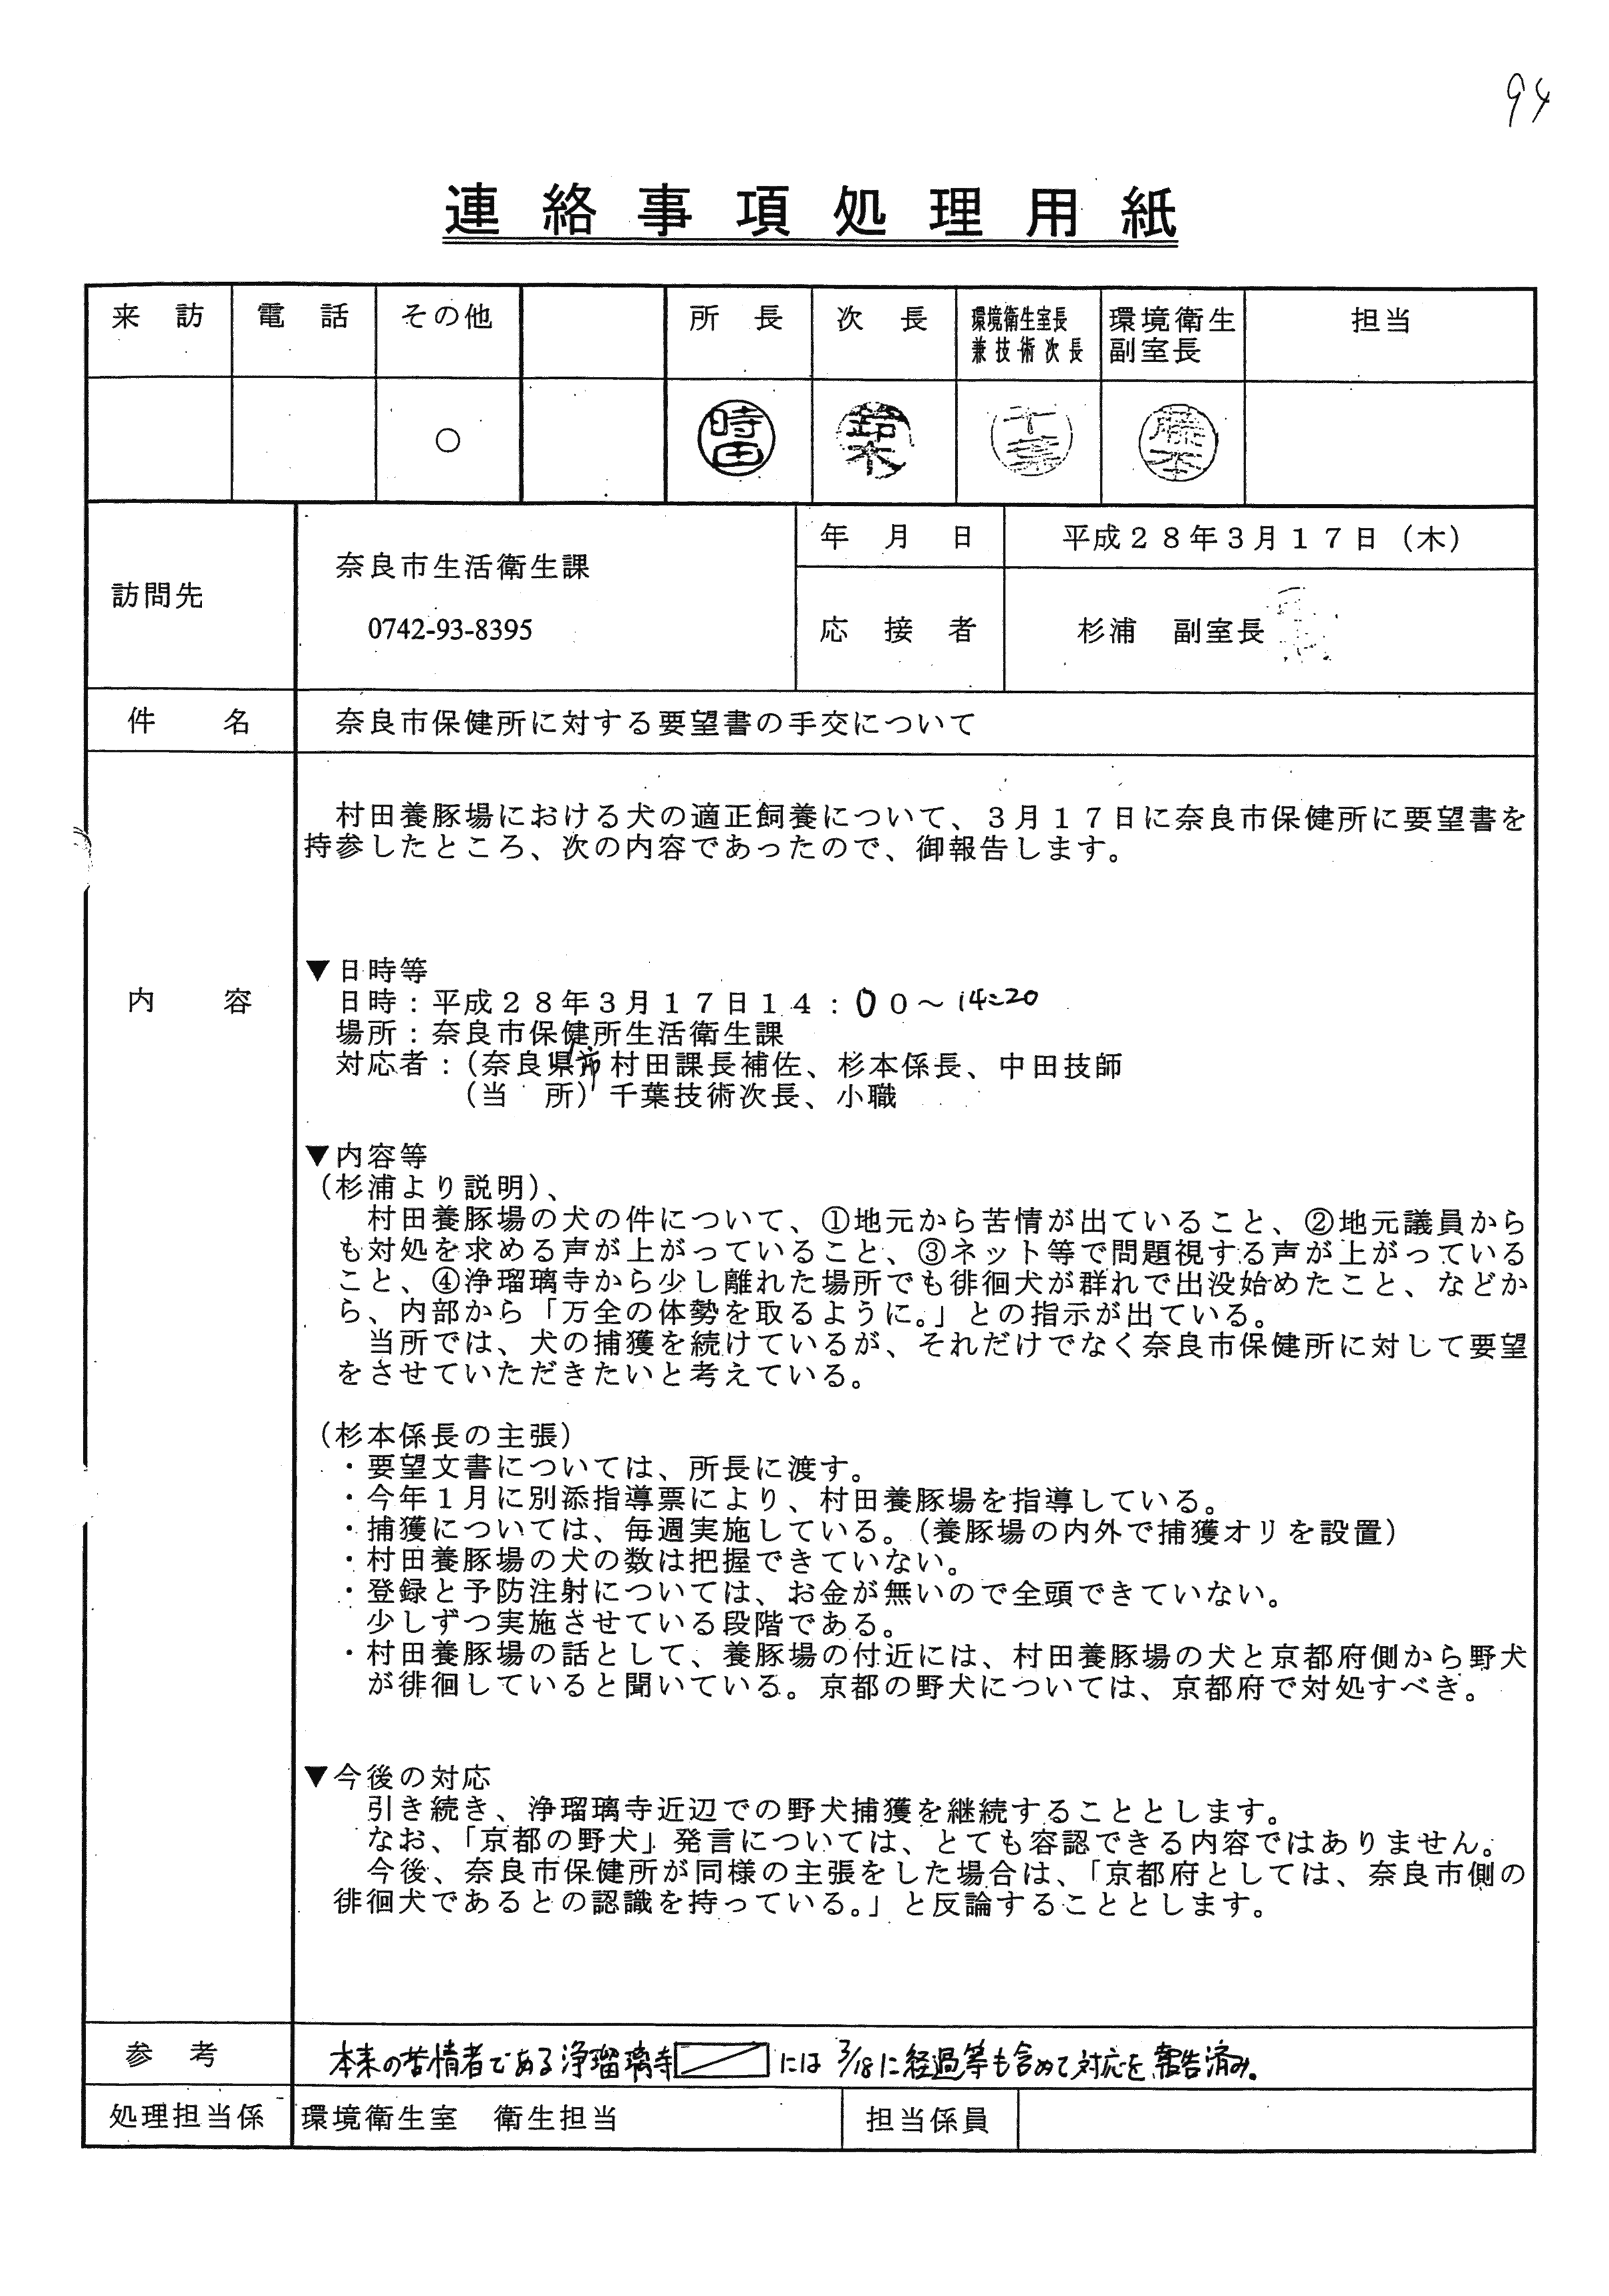 平成28年3月17日-奈良市保健所に対する要望書の手交について-01